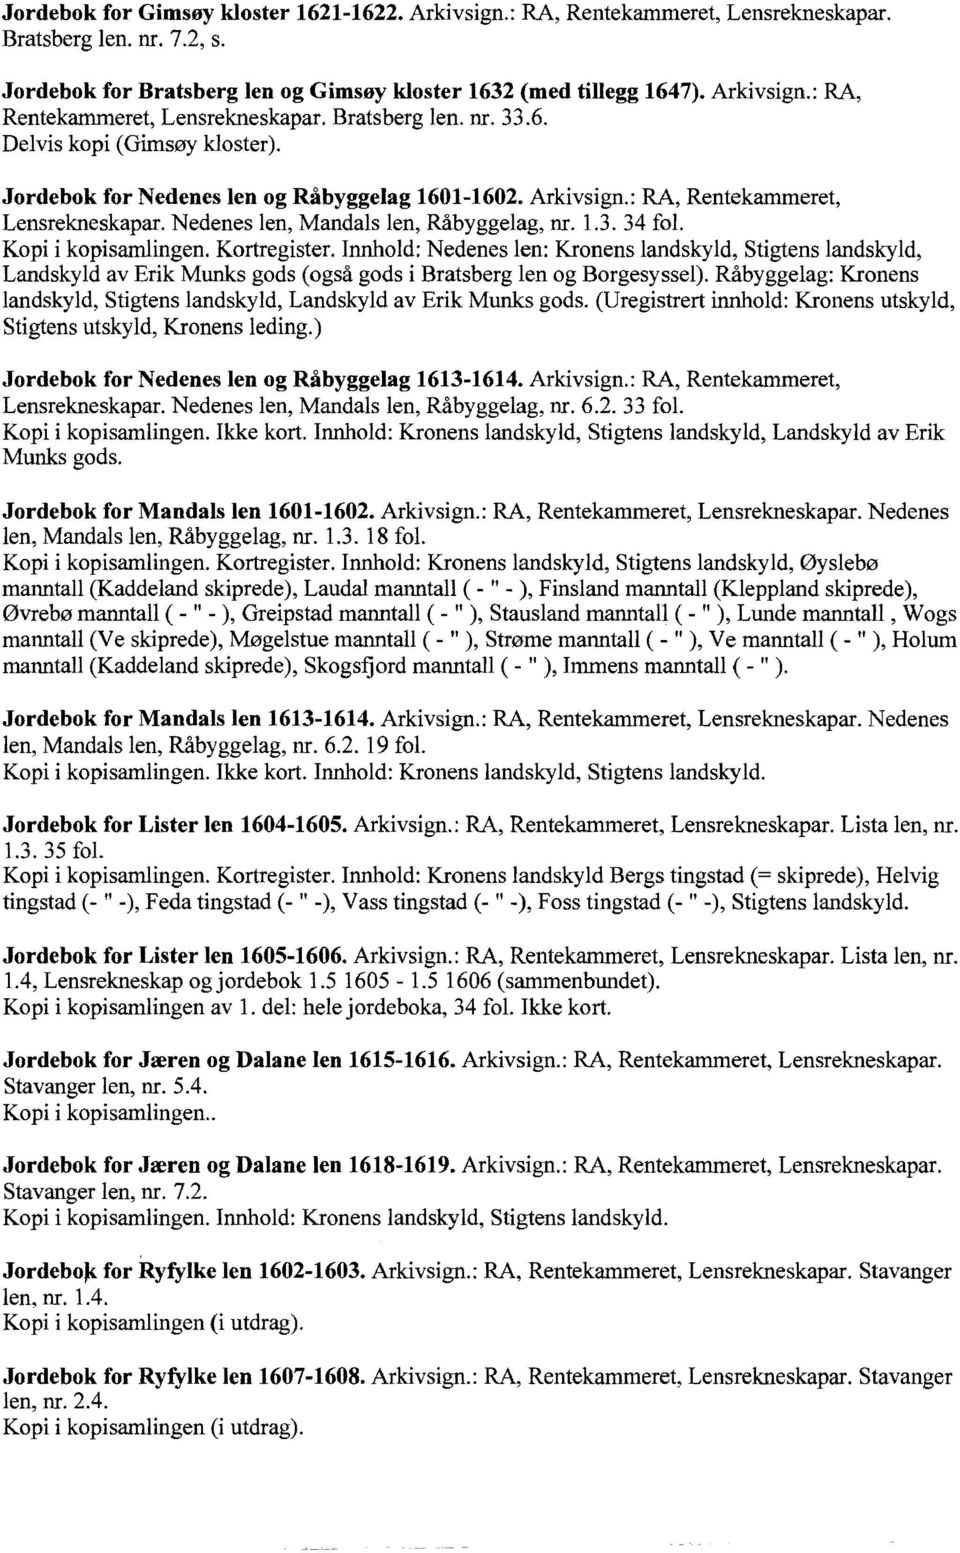 Innhold: Nedenes len: Kronens landskyld, Stigtens landskyld, Landskyld av Erik Munks gods (også gods i Bratsberg len og Borgesyssel).